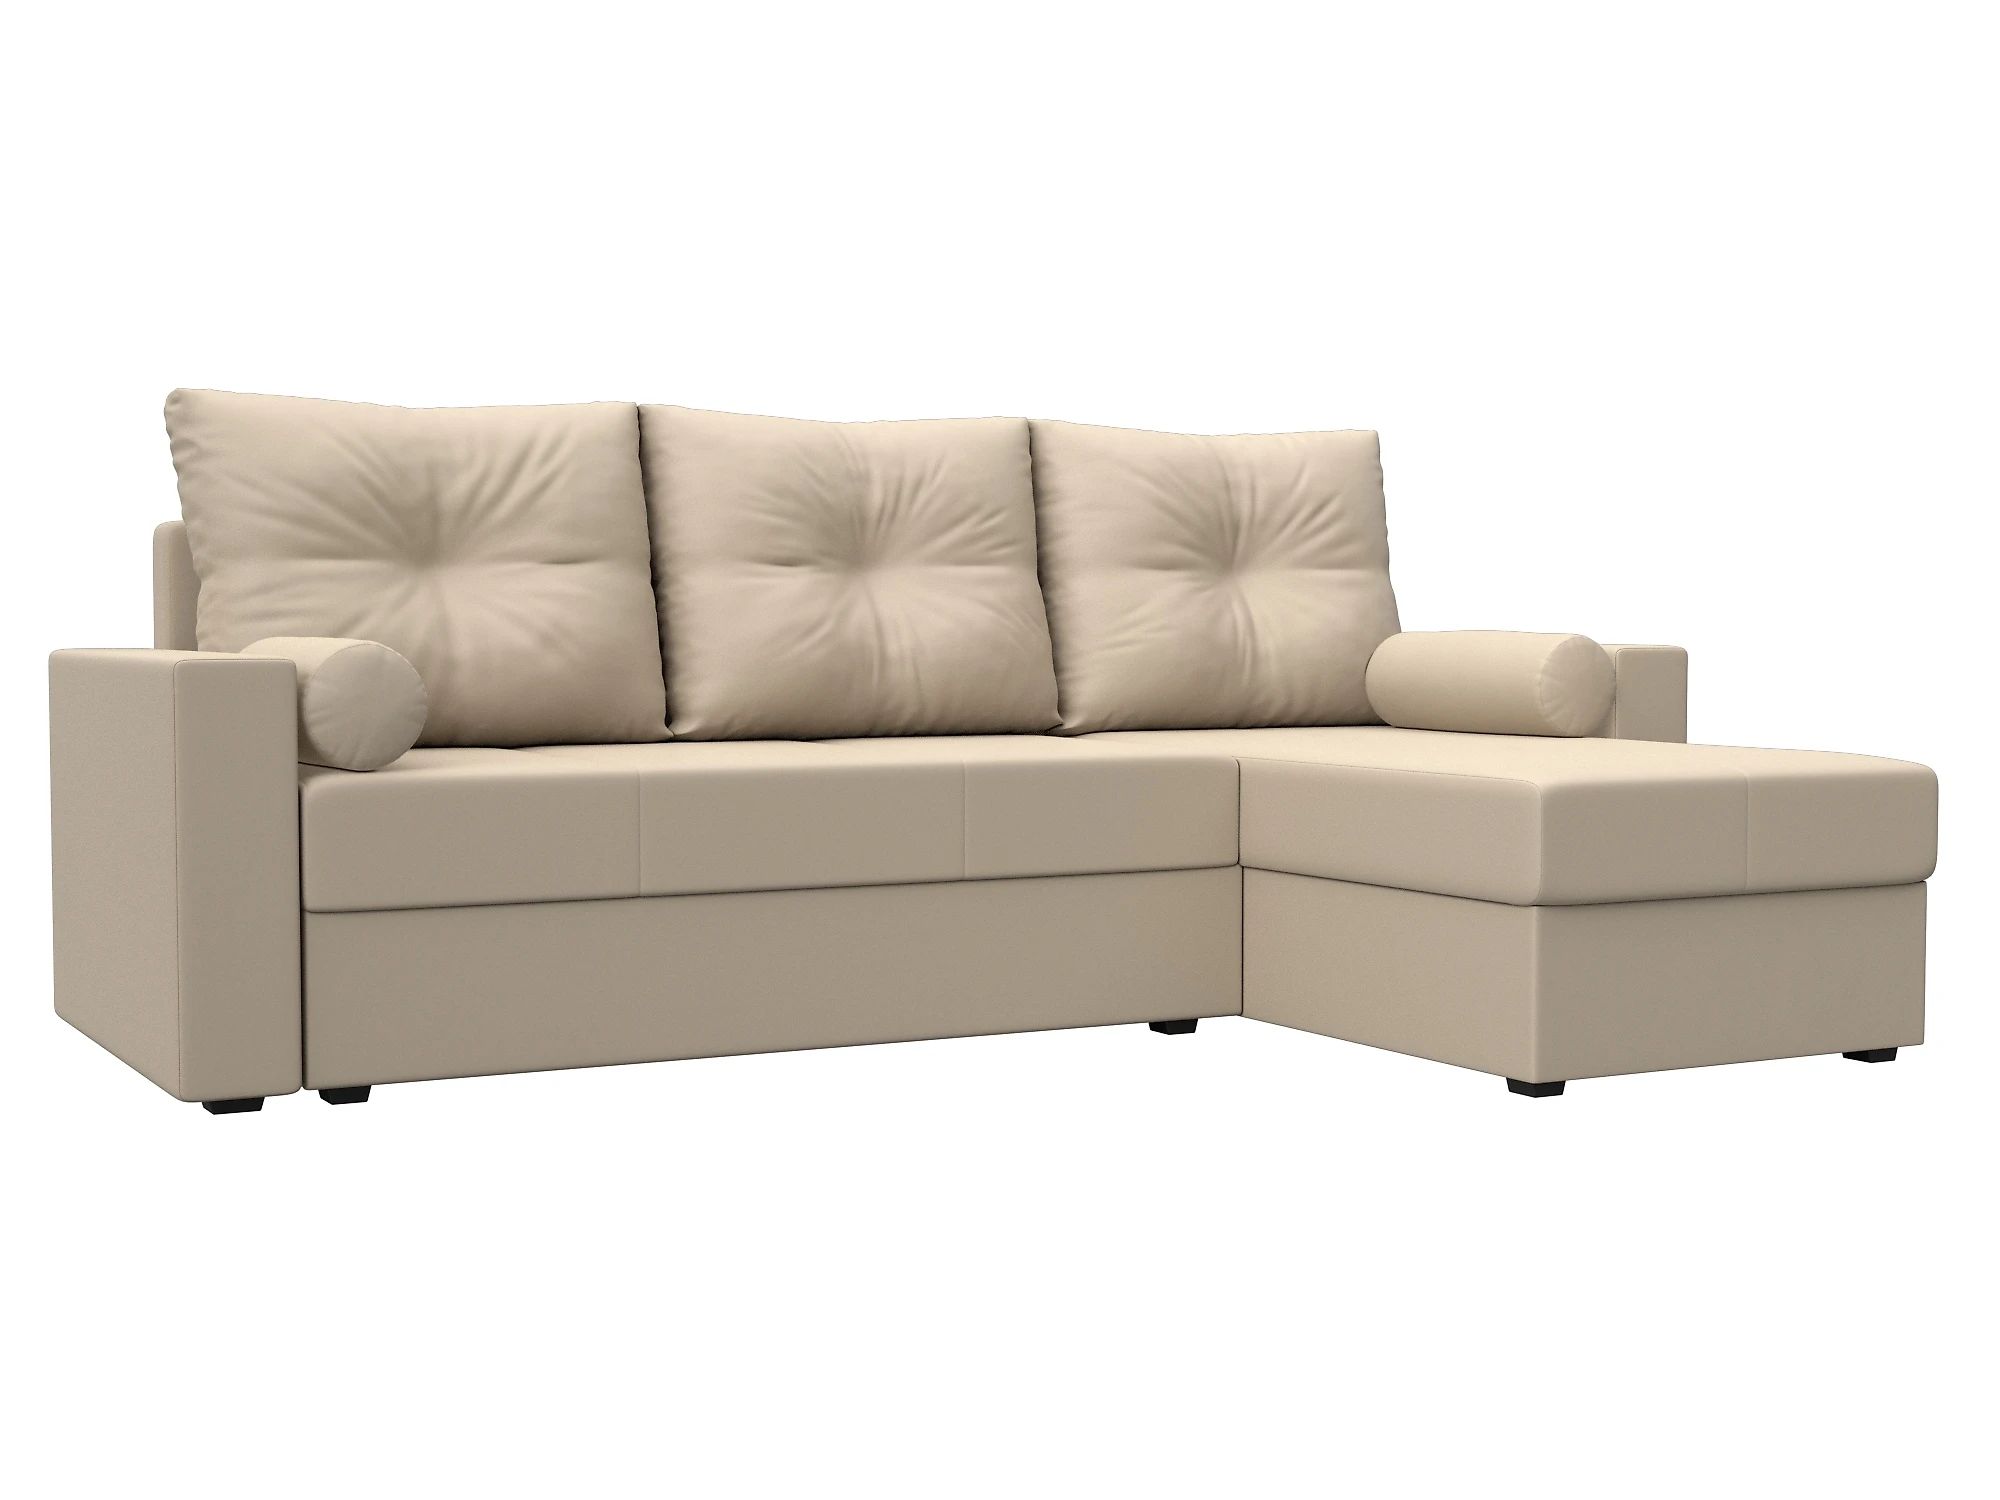  кожаный диван еврокнижка Верона Лайт Дизайн 12